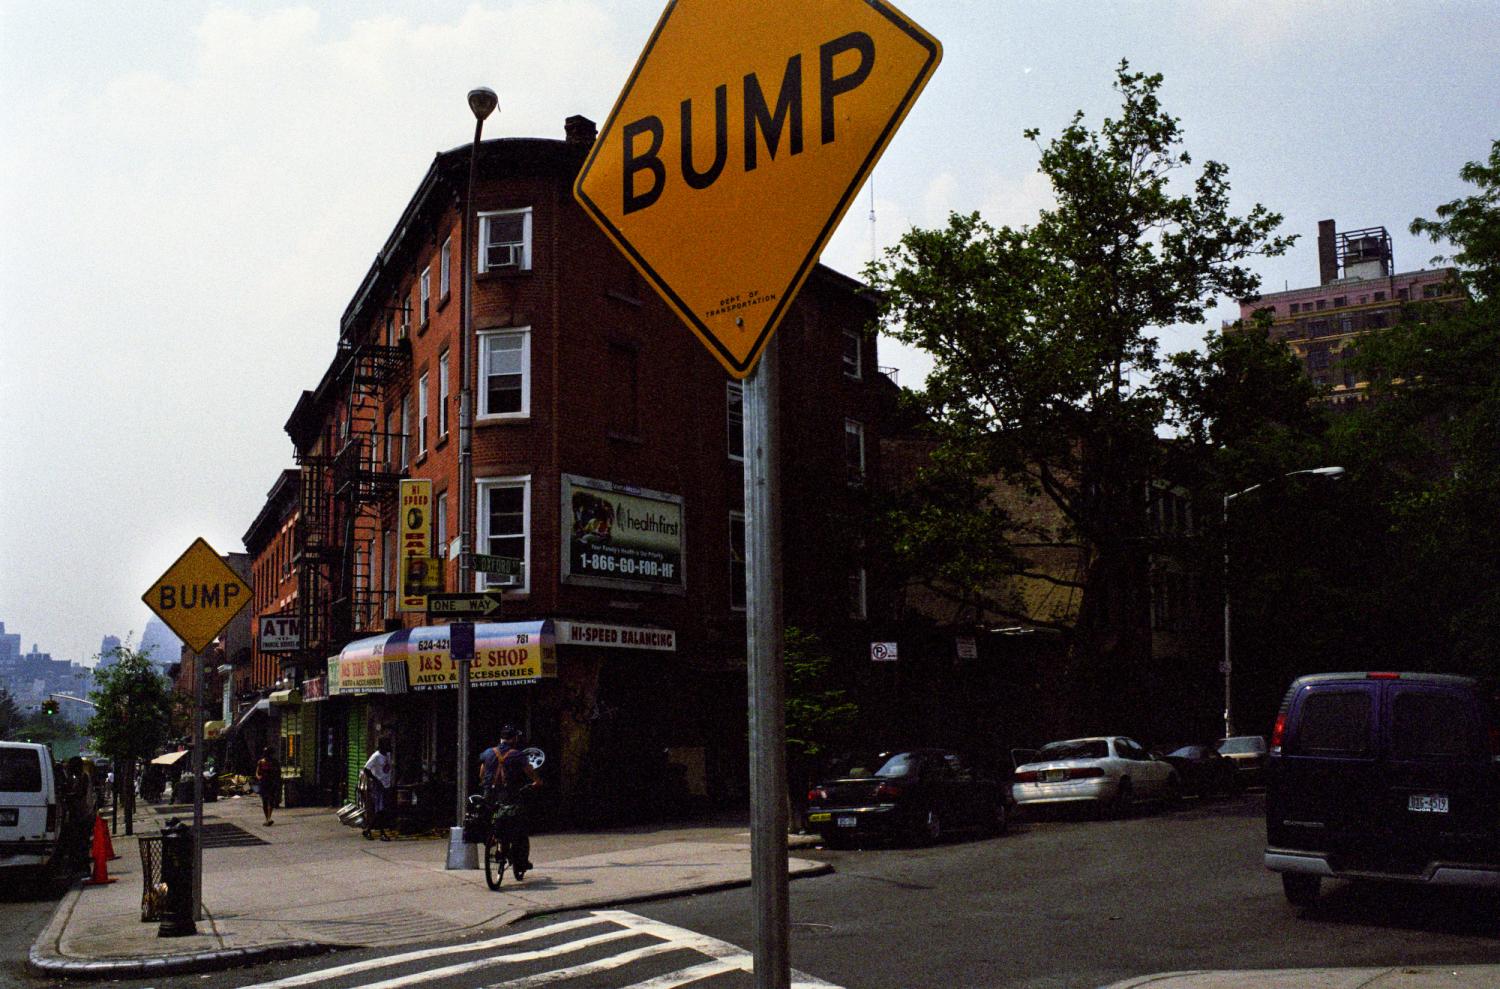 A l'entrée d'un passage piétons, près d'immeubles de briques, un panneau carré jaune : BUMP. New York, juin 2003.